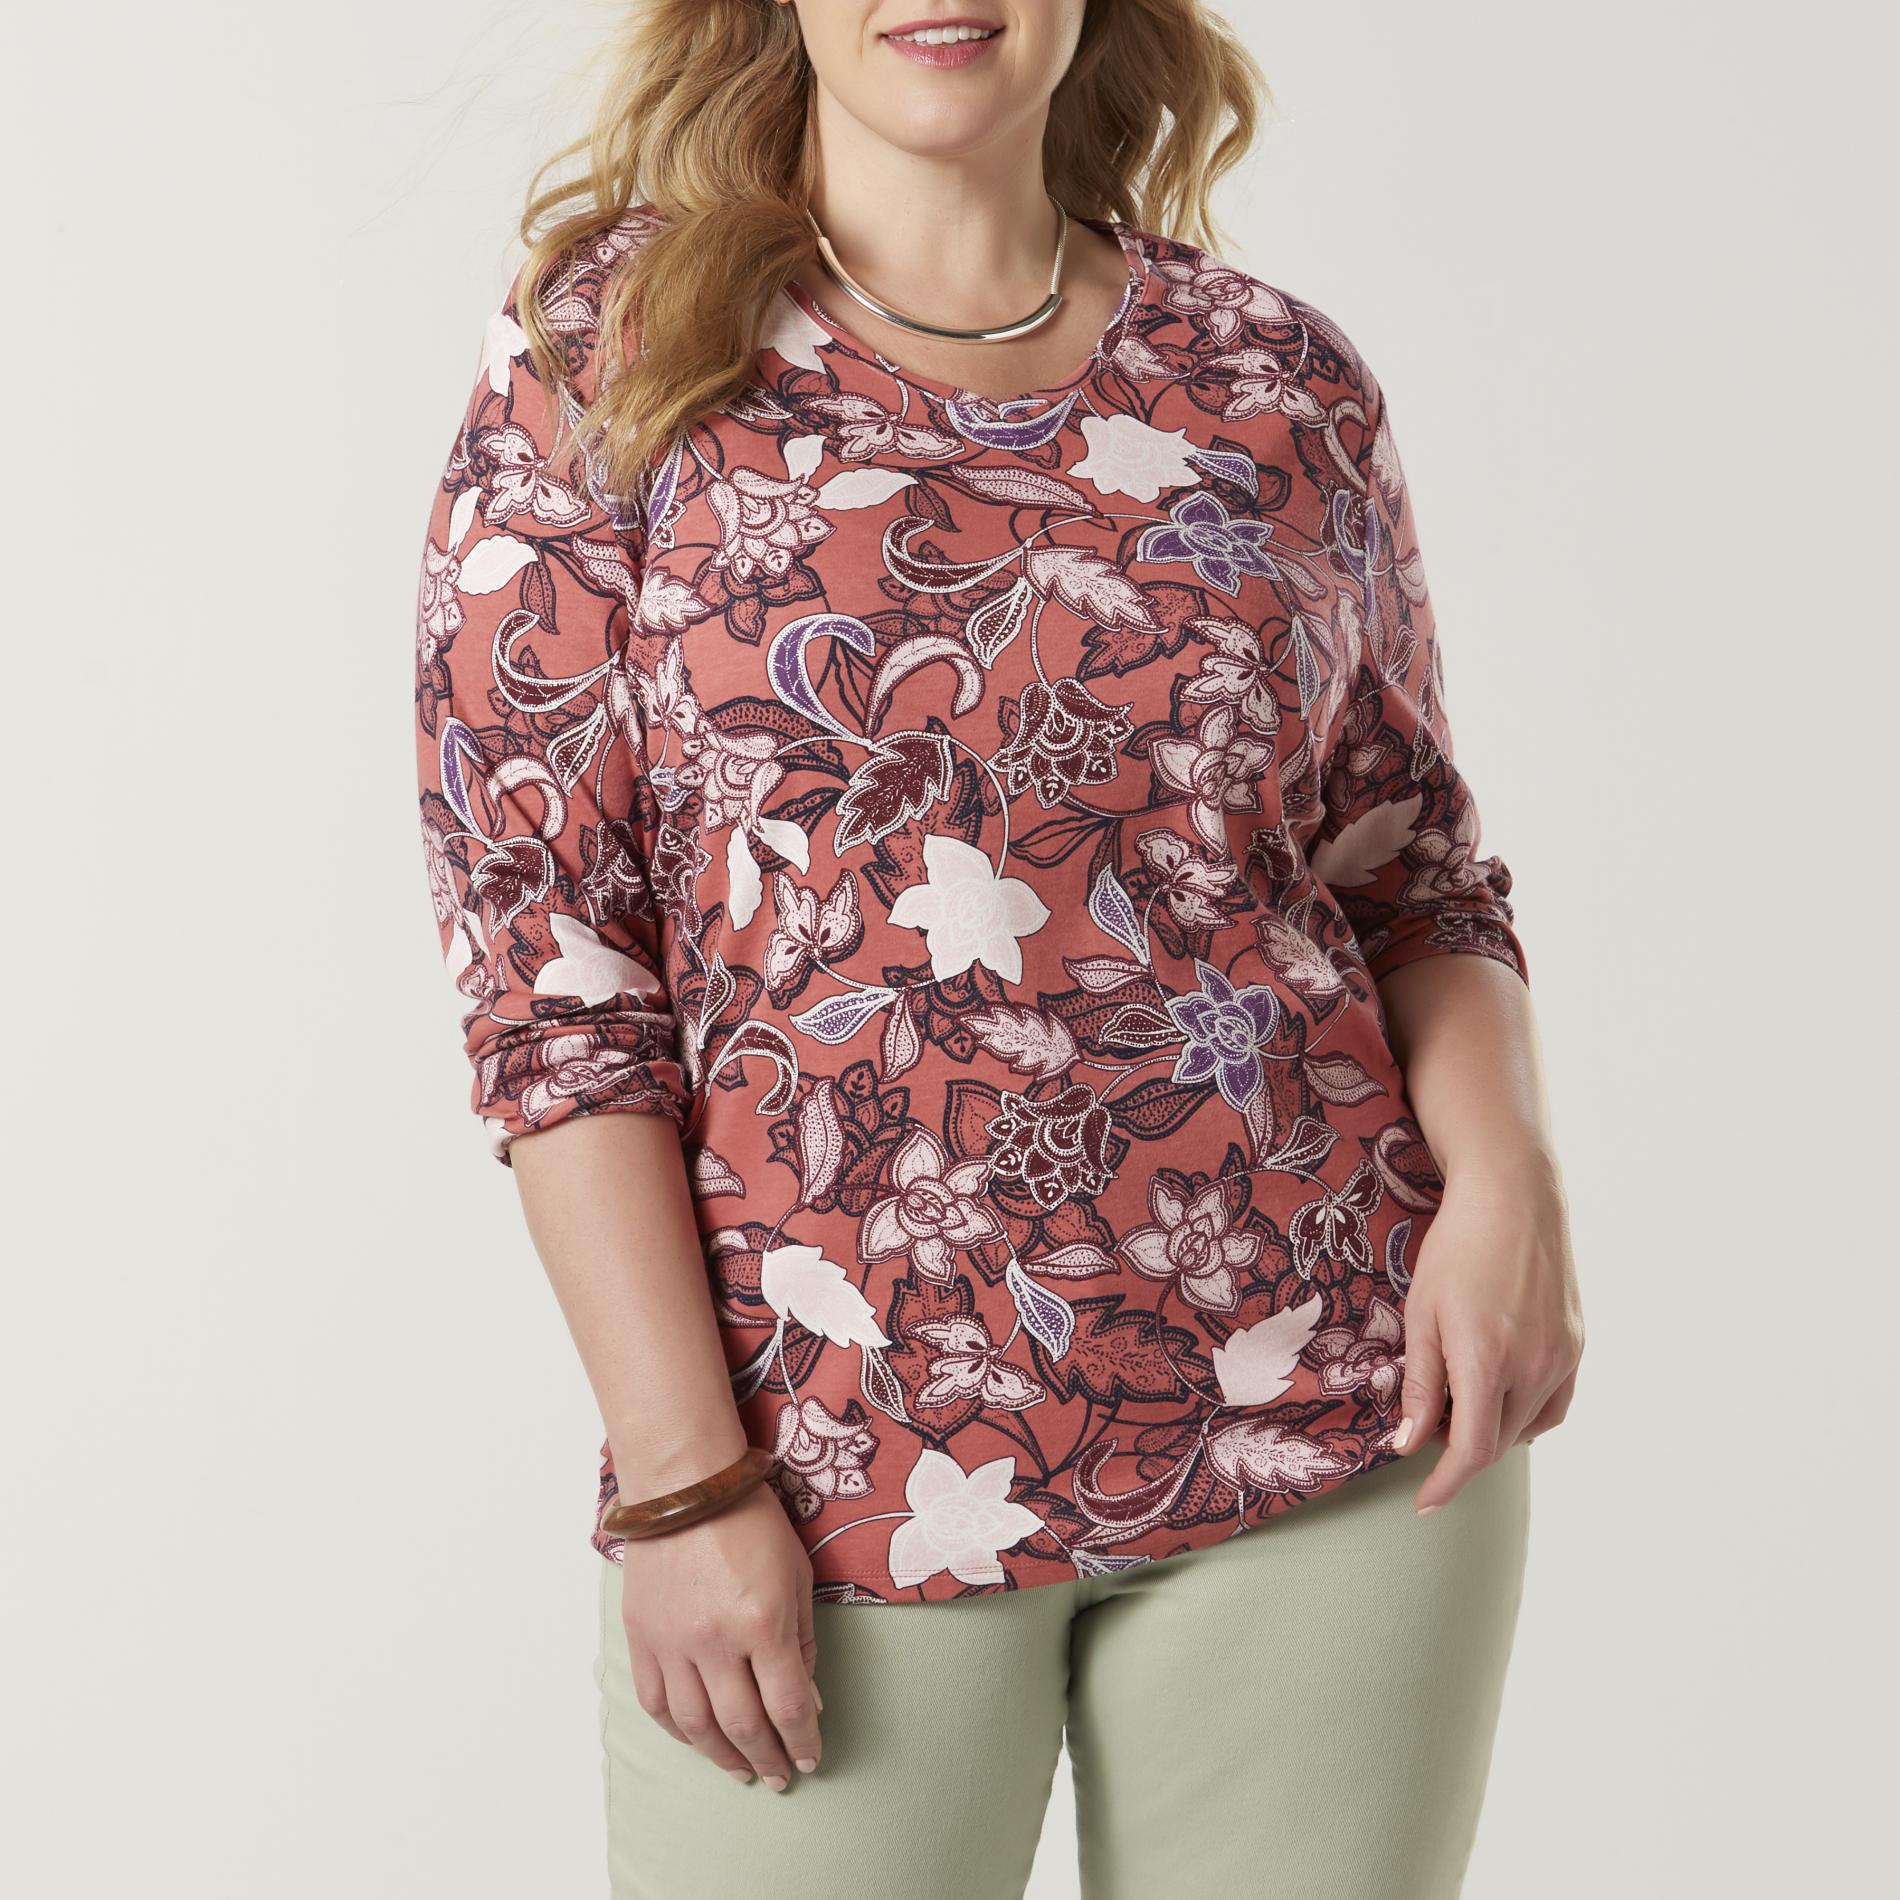 Laura Scott Women's Plus V-Neck T-Shirt - Floral